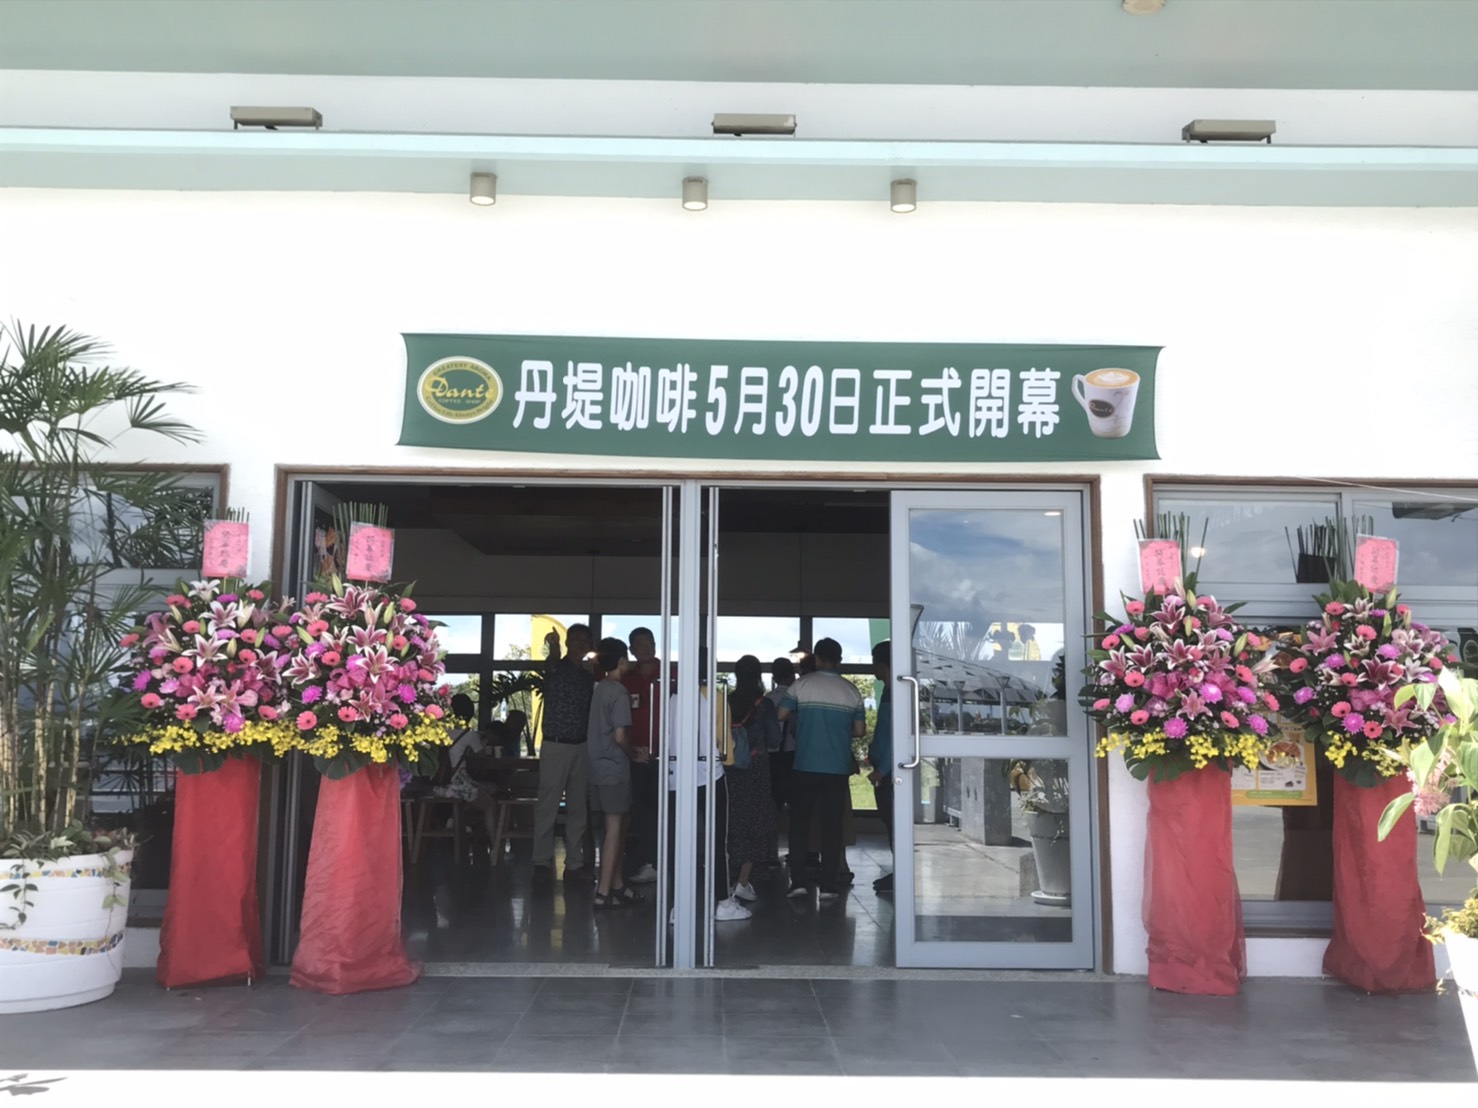 「屏東大鵬湾店」が5月30日(土)から正式営業しています